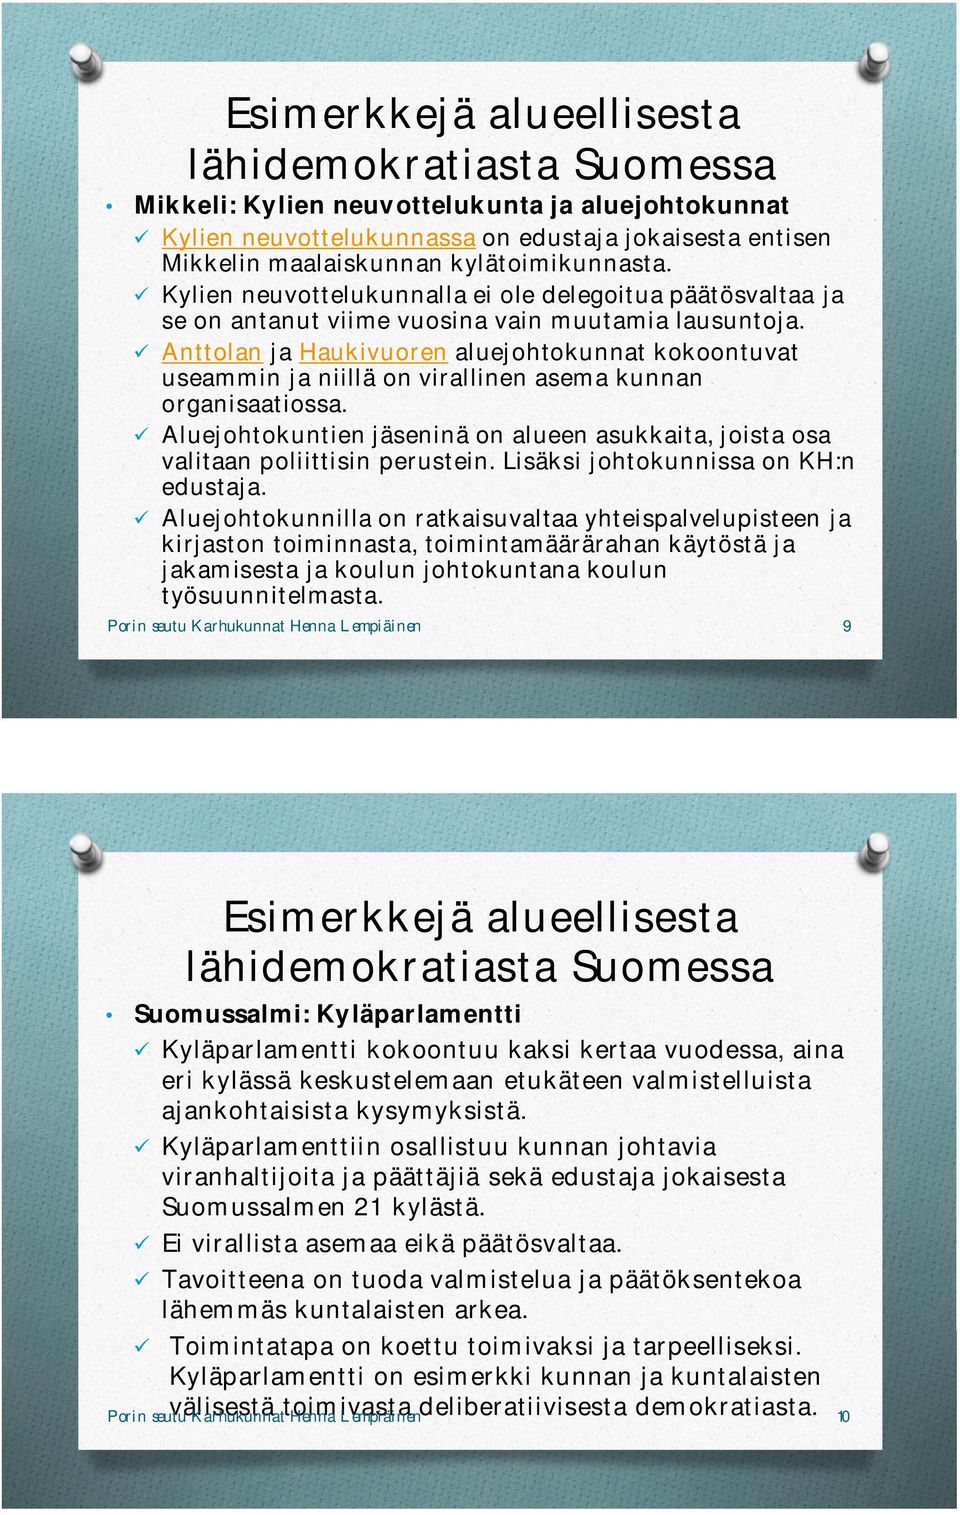 Anttolan ja Haukivuoren aluejohtokunnat kokoontuvat useammin ja niillä on virallinen asema kunnan organisaatiossa.